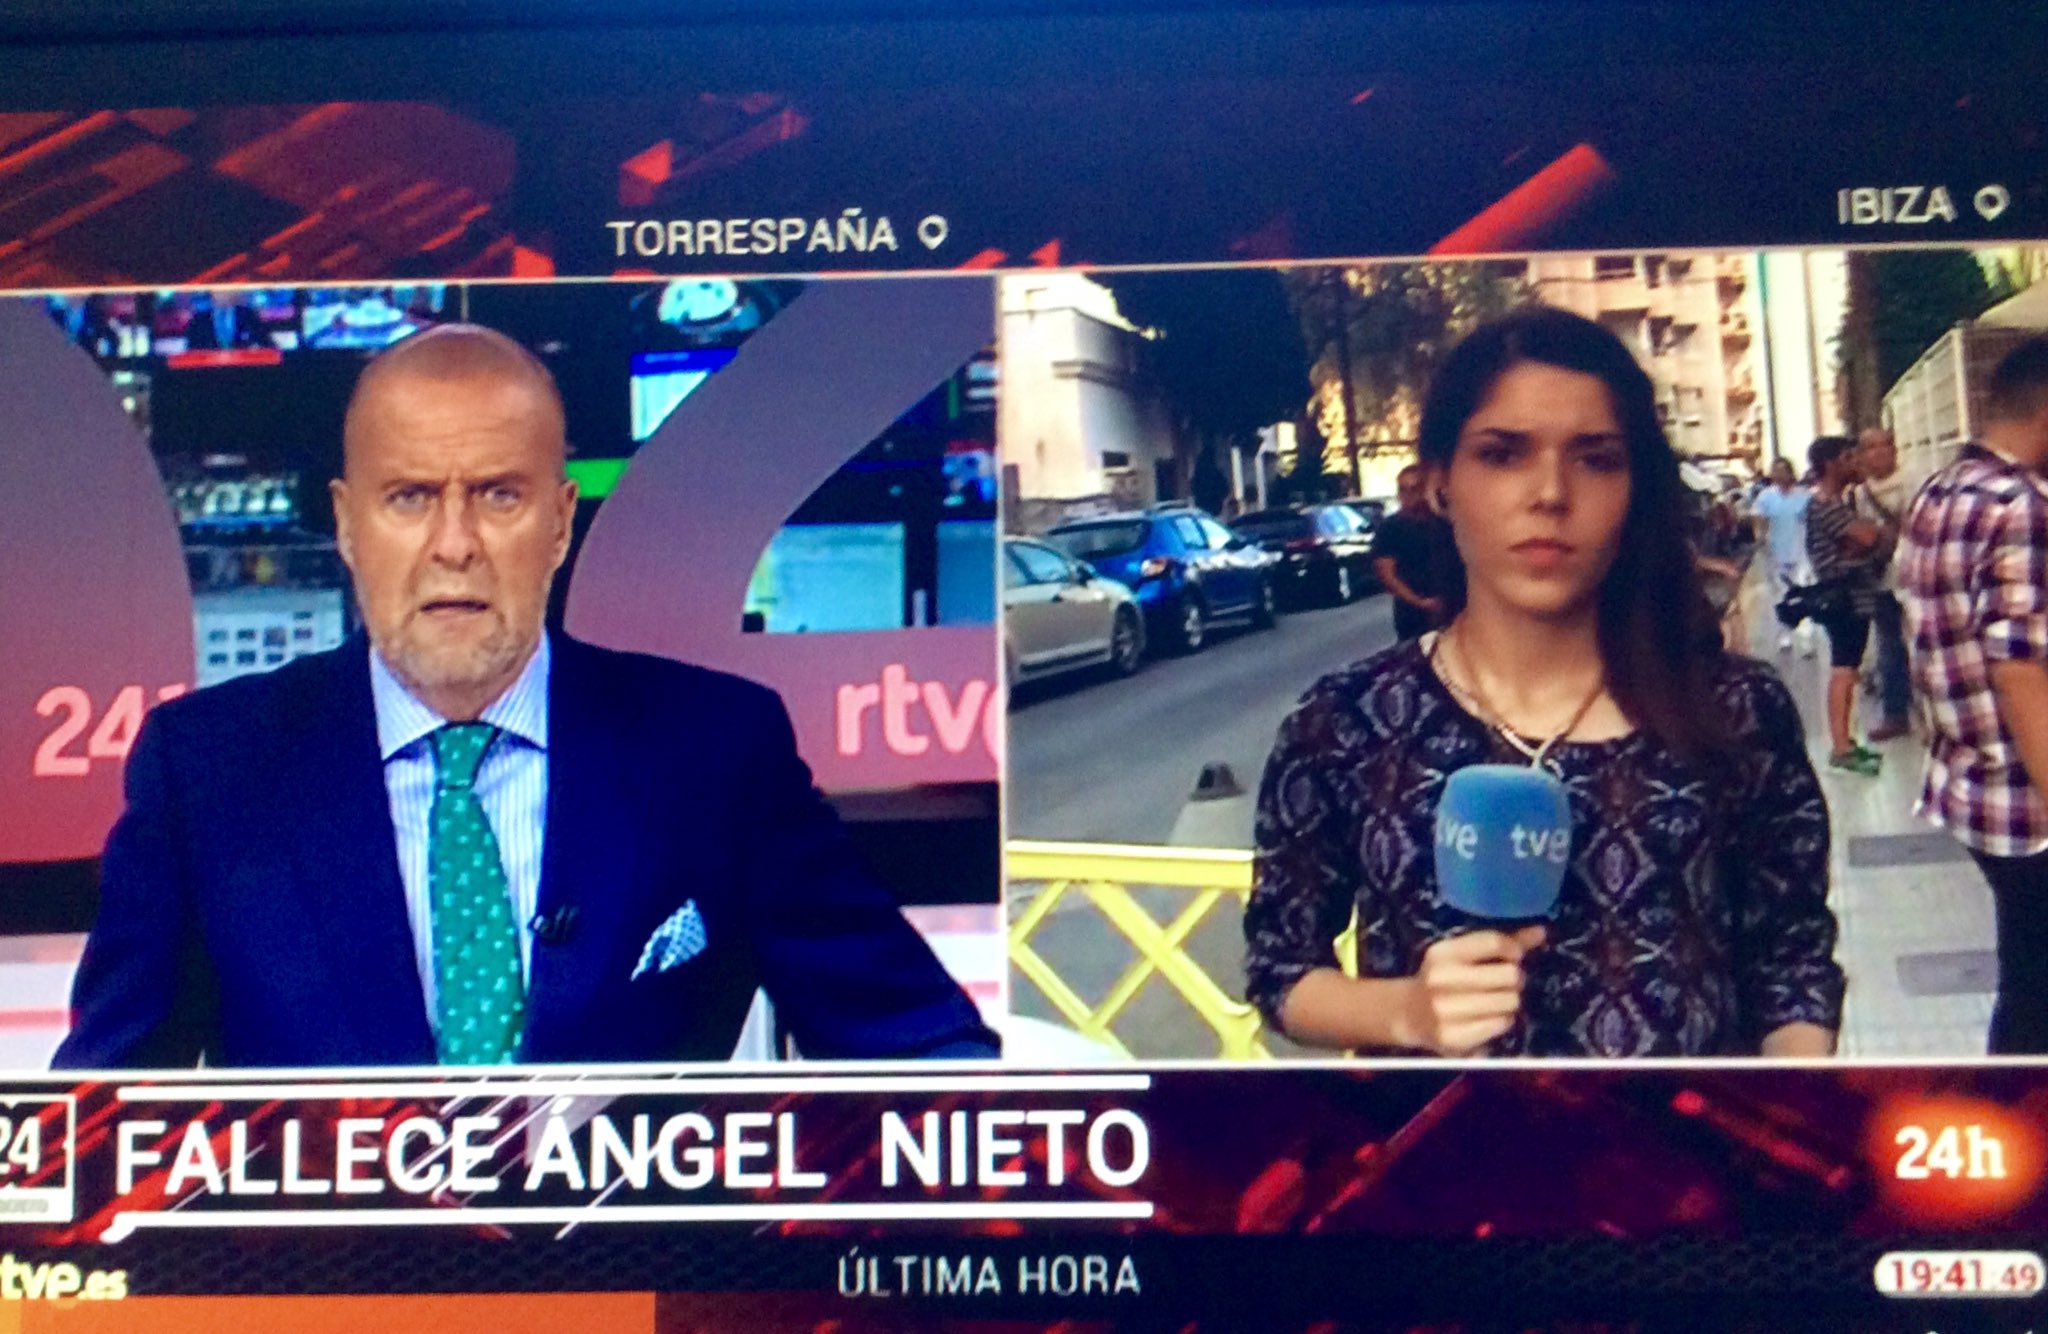 Comunicación y Participación on Twitter: "@24h_tve @tve_tve @rtve @rtvees primera cadena de televisión en España en anunciar la muerte de Ángel Nieto, https://t.co/ZYDTqYadth" / Twitter